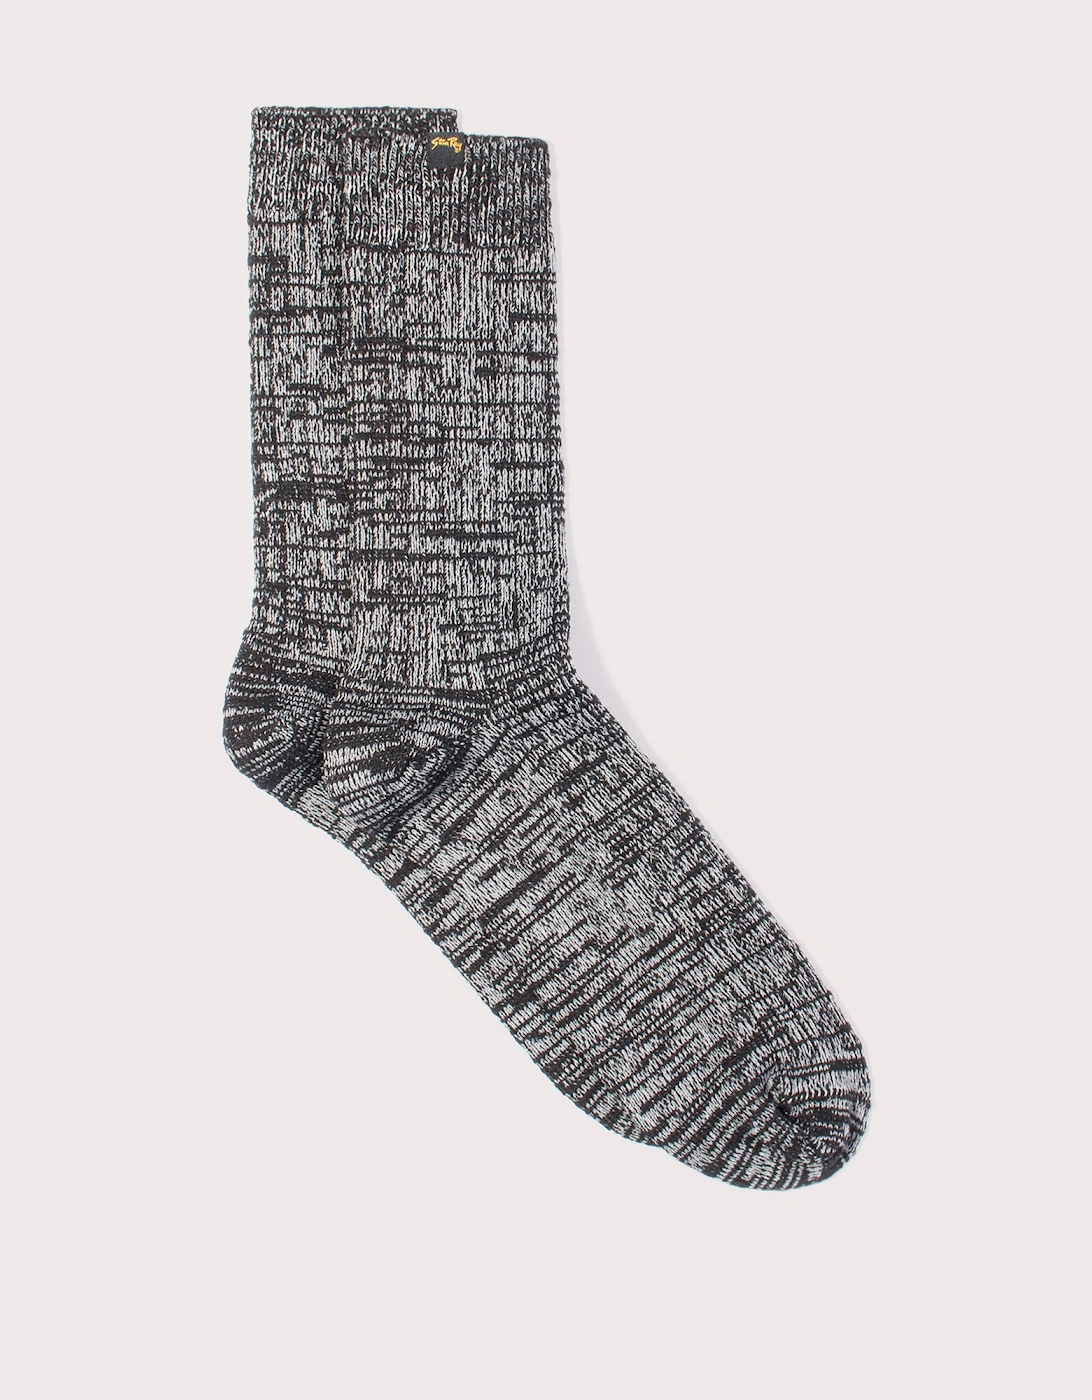 Field Sock, 3 of 2